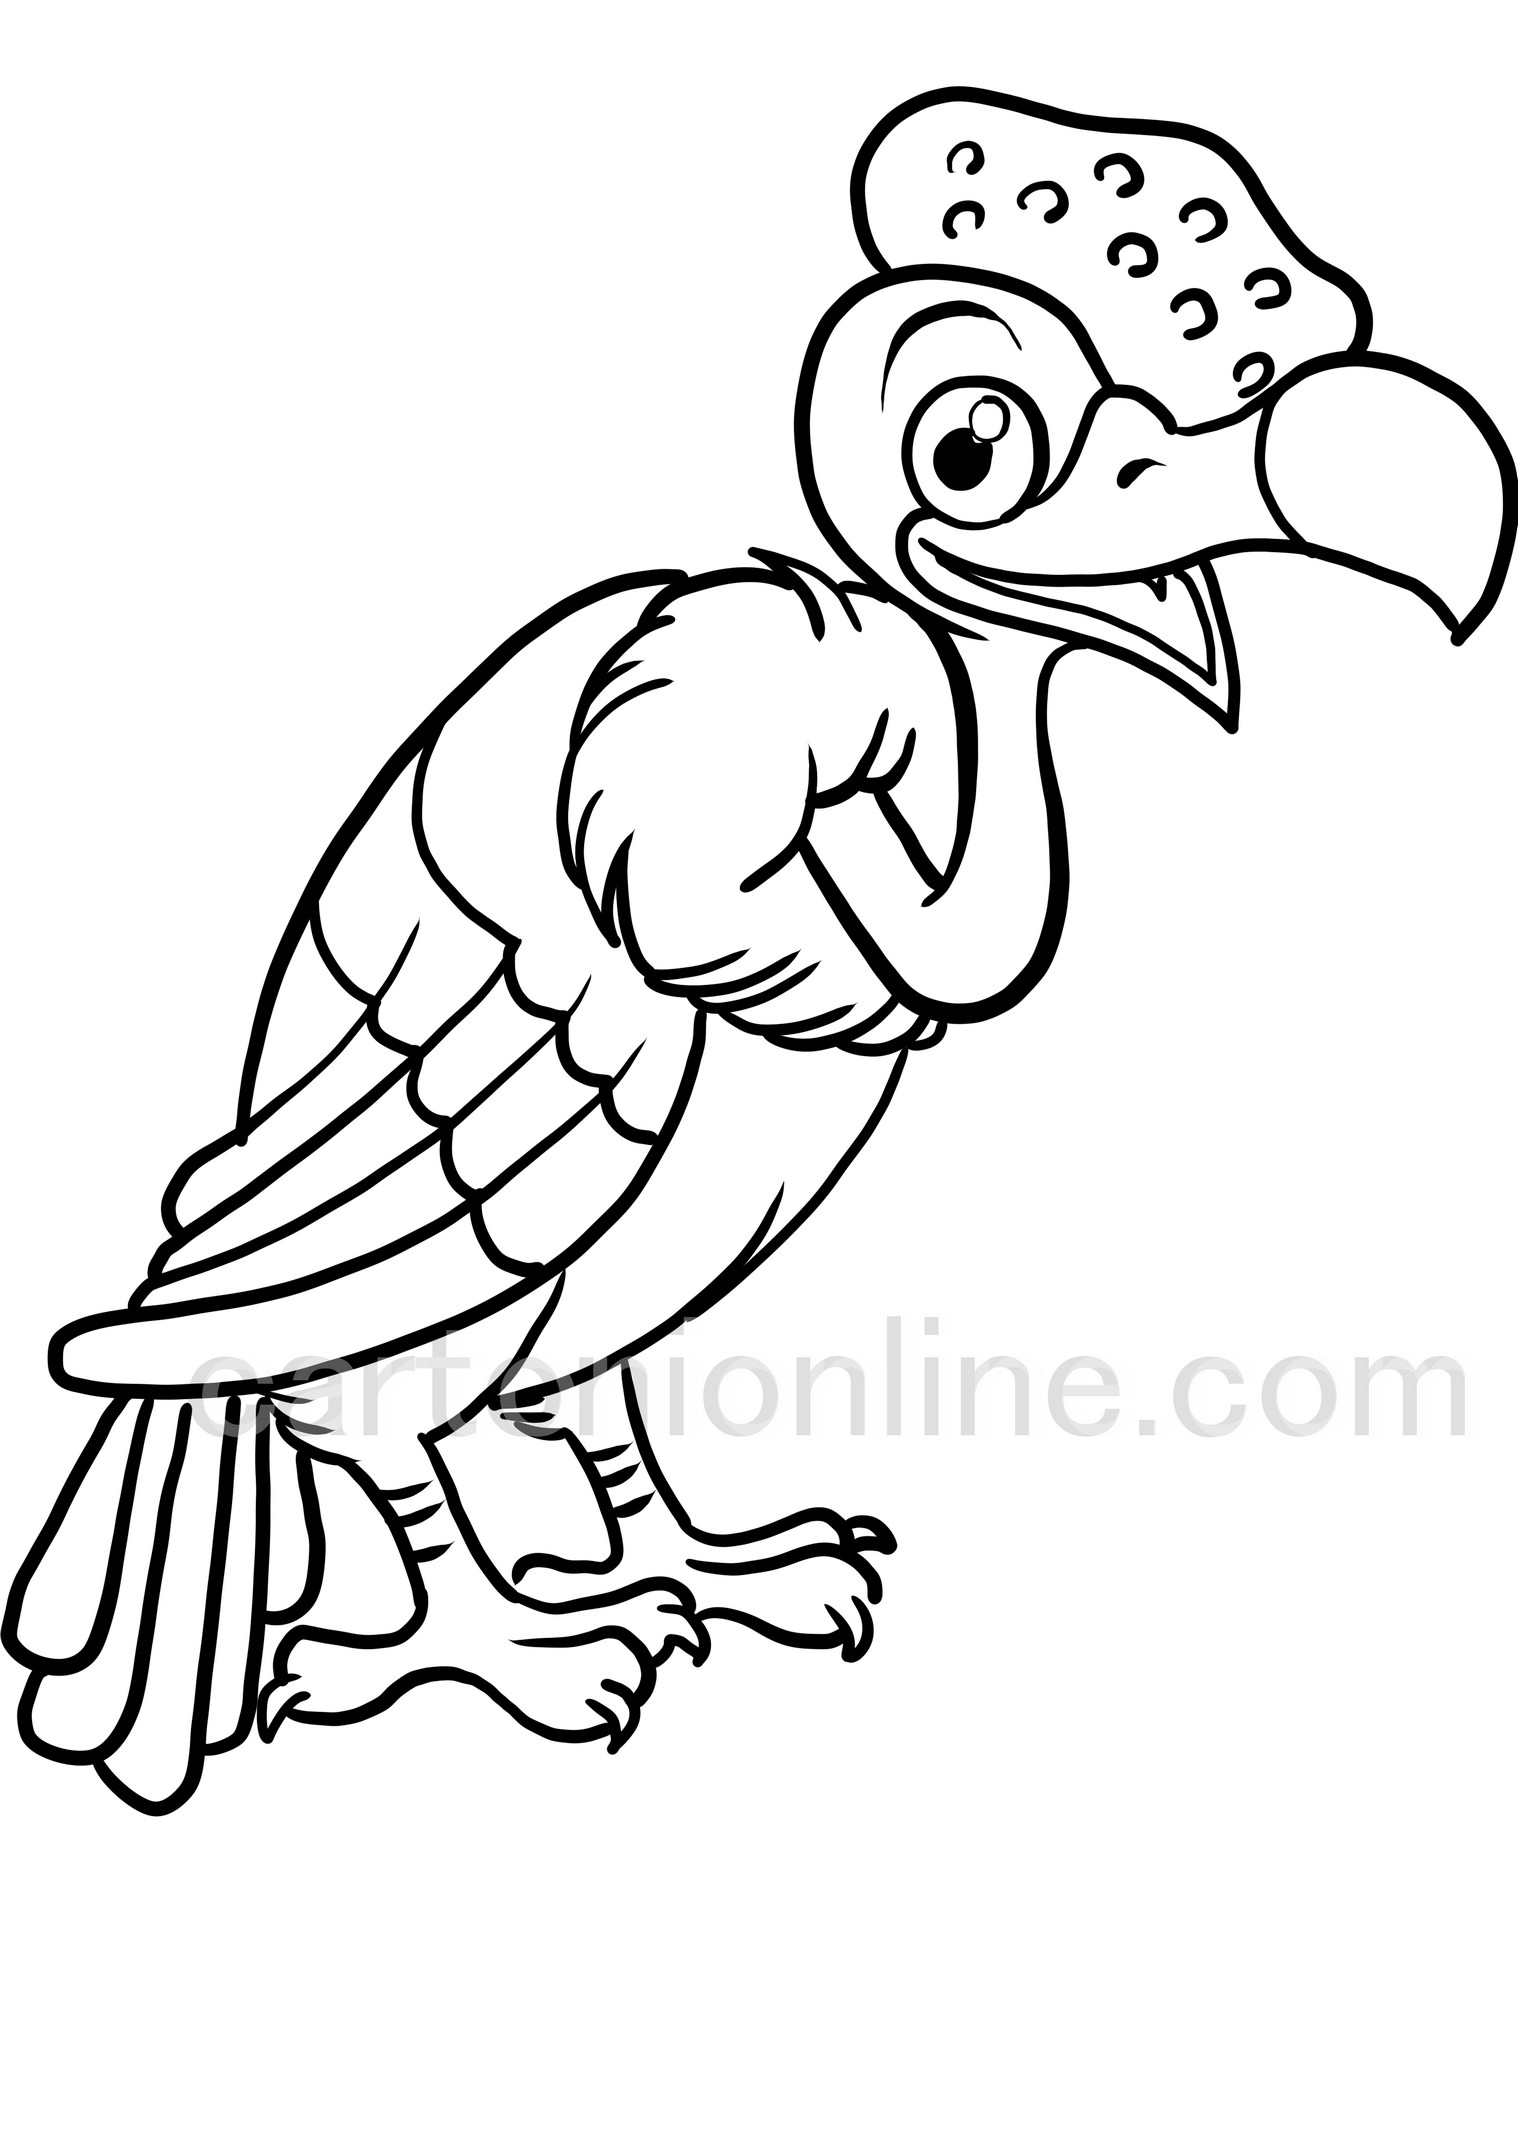 Disegno di condor realistico da colorare